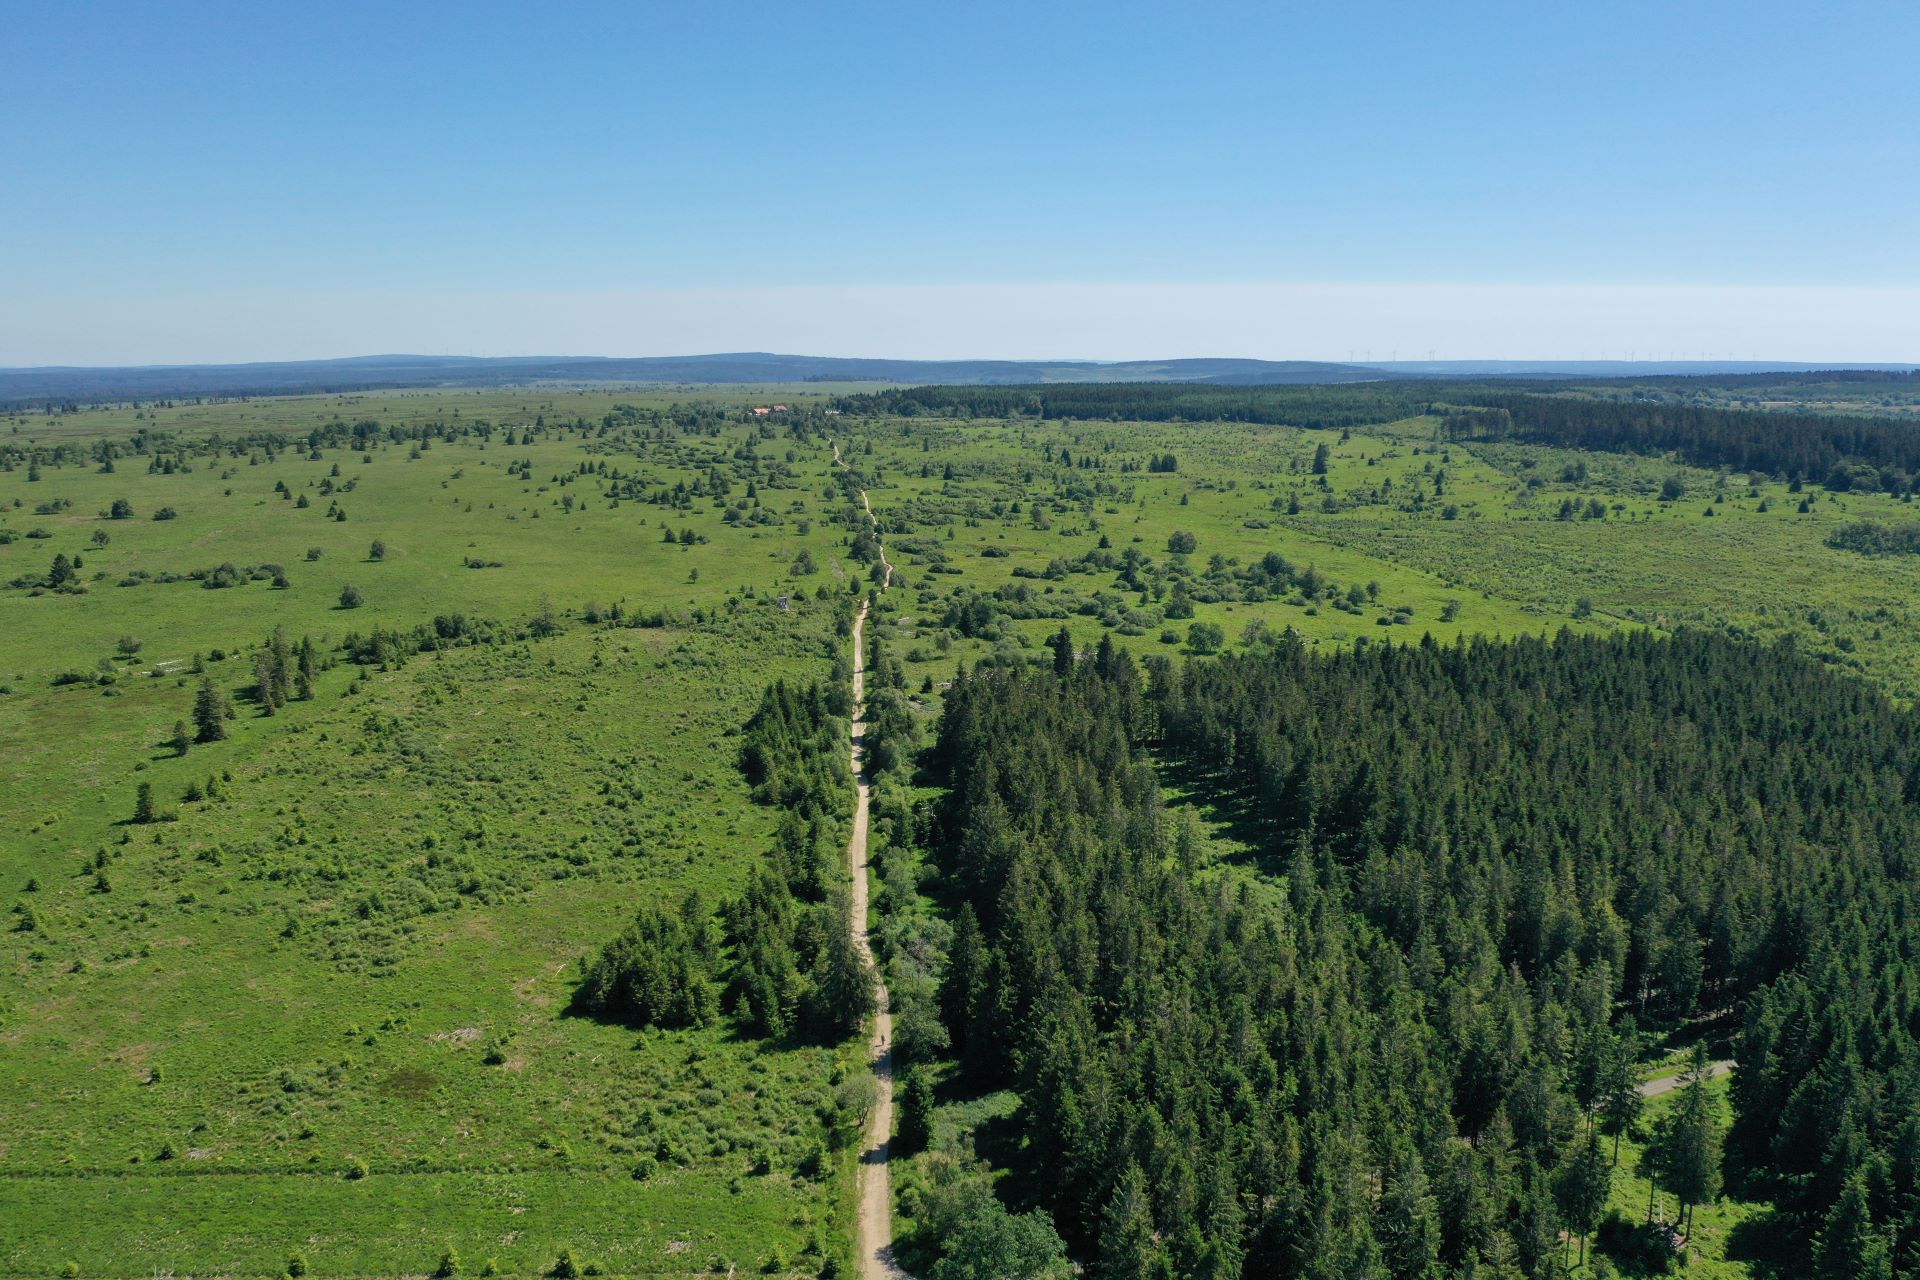 Une vue dans la forêt se concentre sur le dessous des arbres à plusieurs mètres de la caméra. Des herbes et de la verdure entourent les grands arbres.